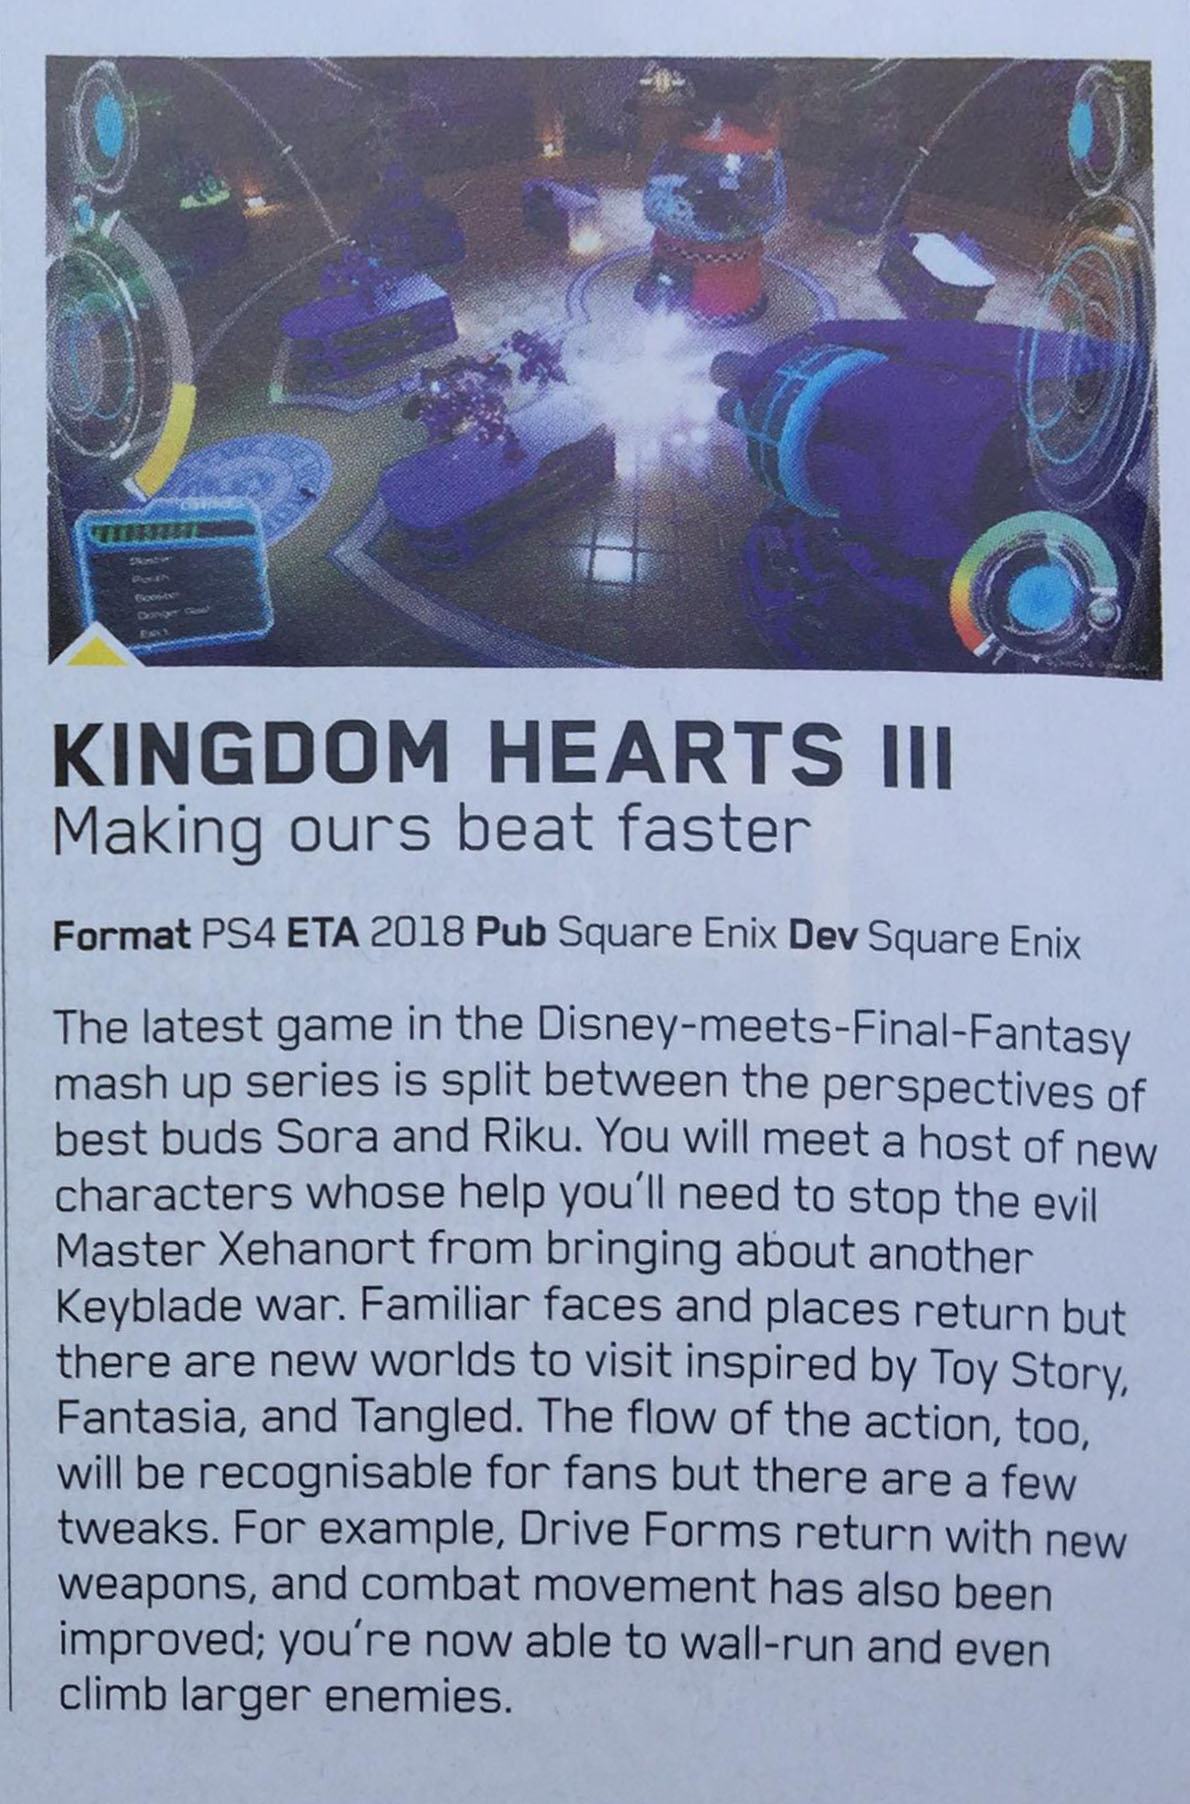 Riku giocabile e il mondo di Fantasia in Kingdom Hearts 3? 6